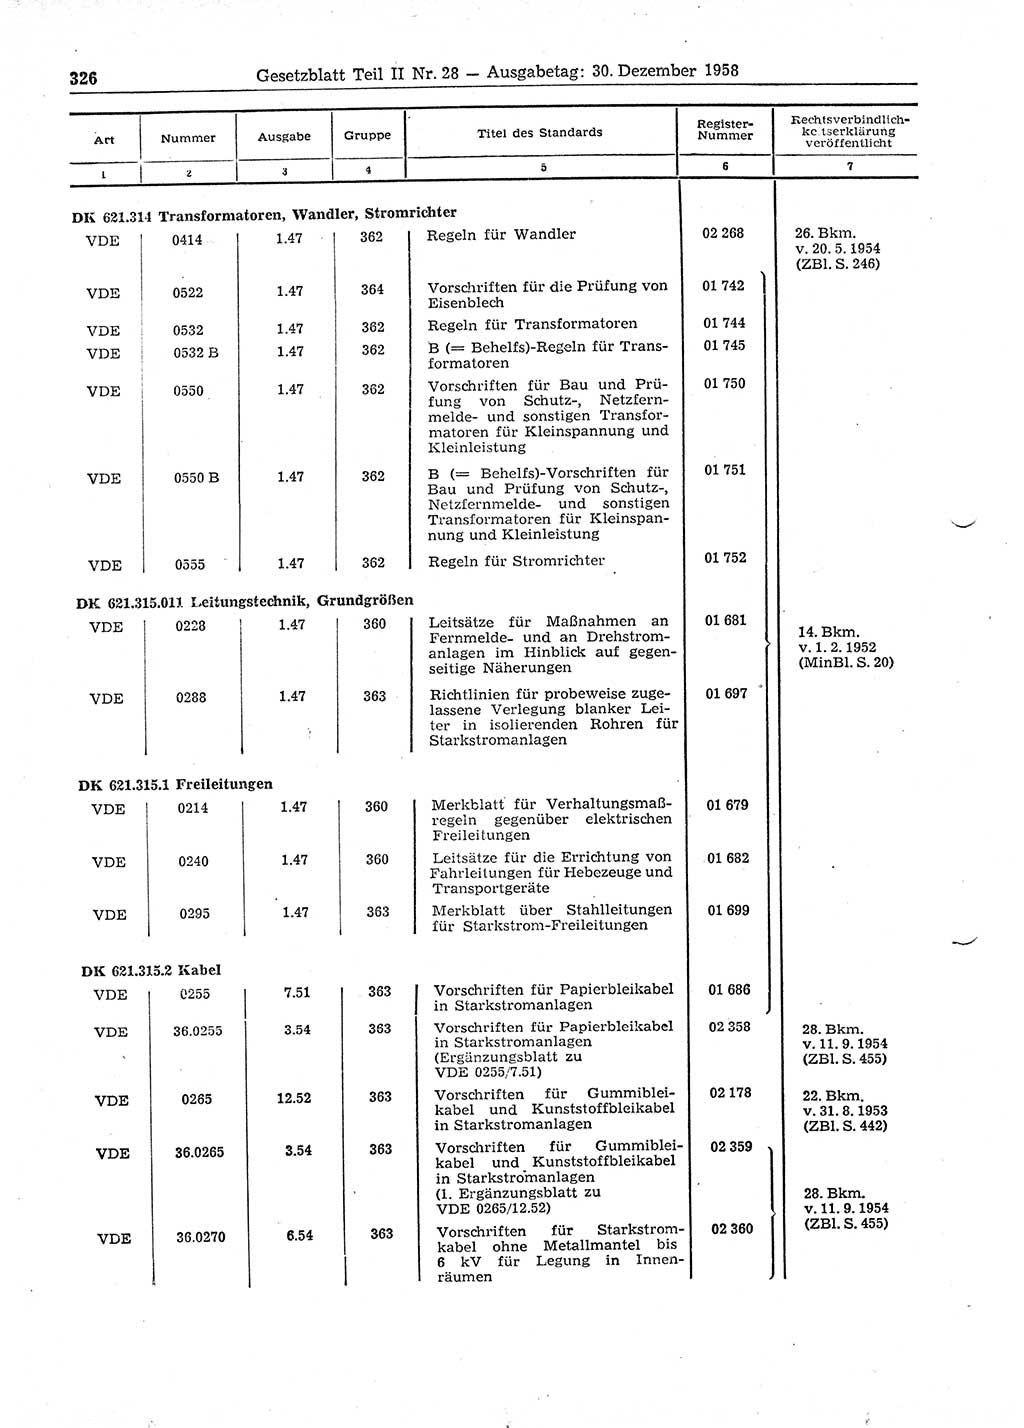 Gesetzblatt (GBl.) der Deutschen Demokratischen Republik (DDR) Teil ⅠⅠ 1958, Seite 326 (GBl. DDR ⅠⅠ 1958, S. 326)